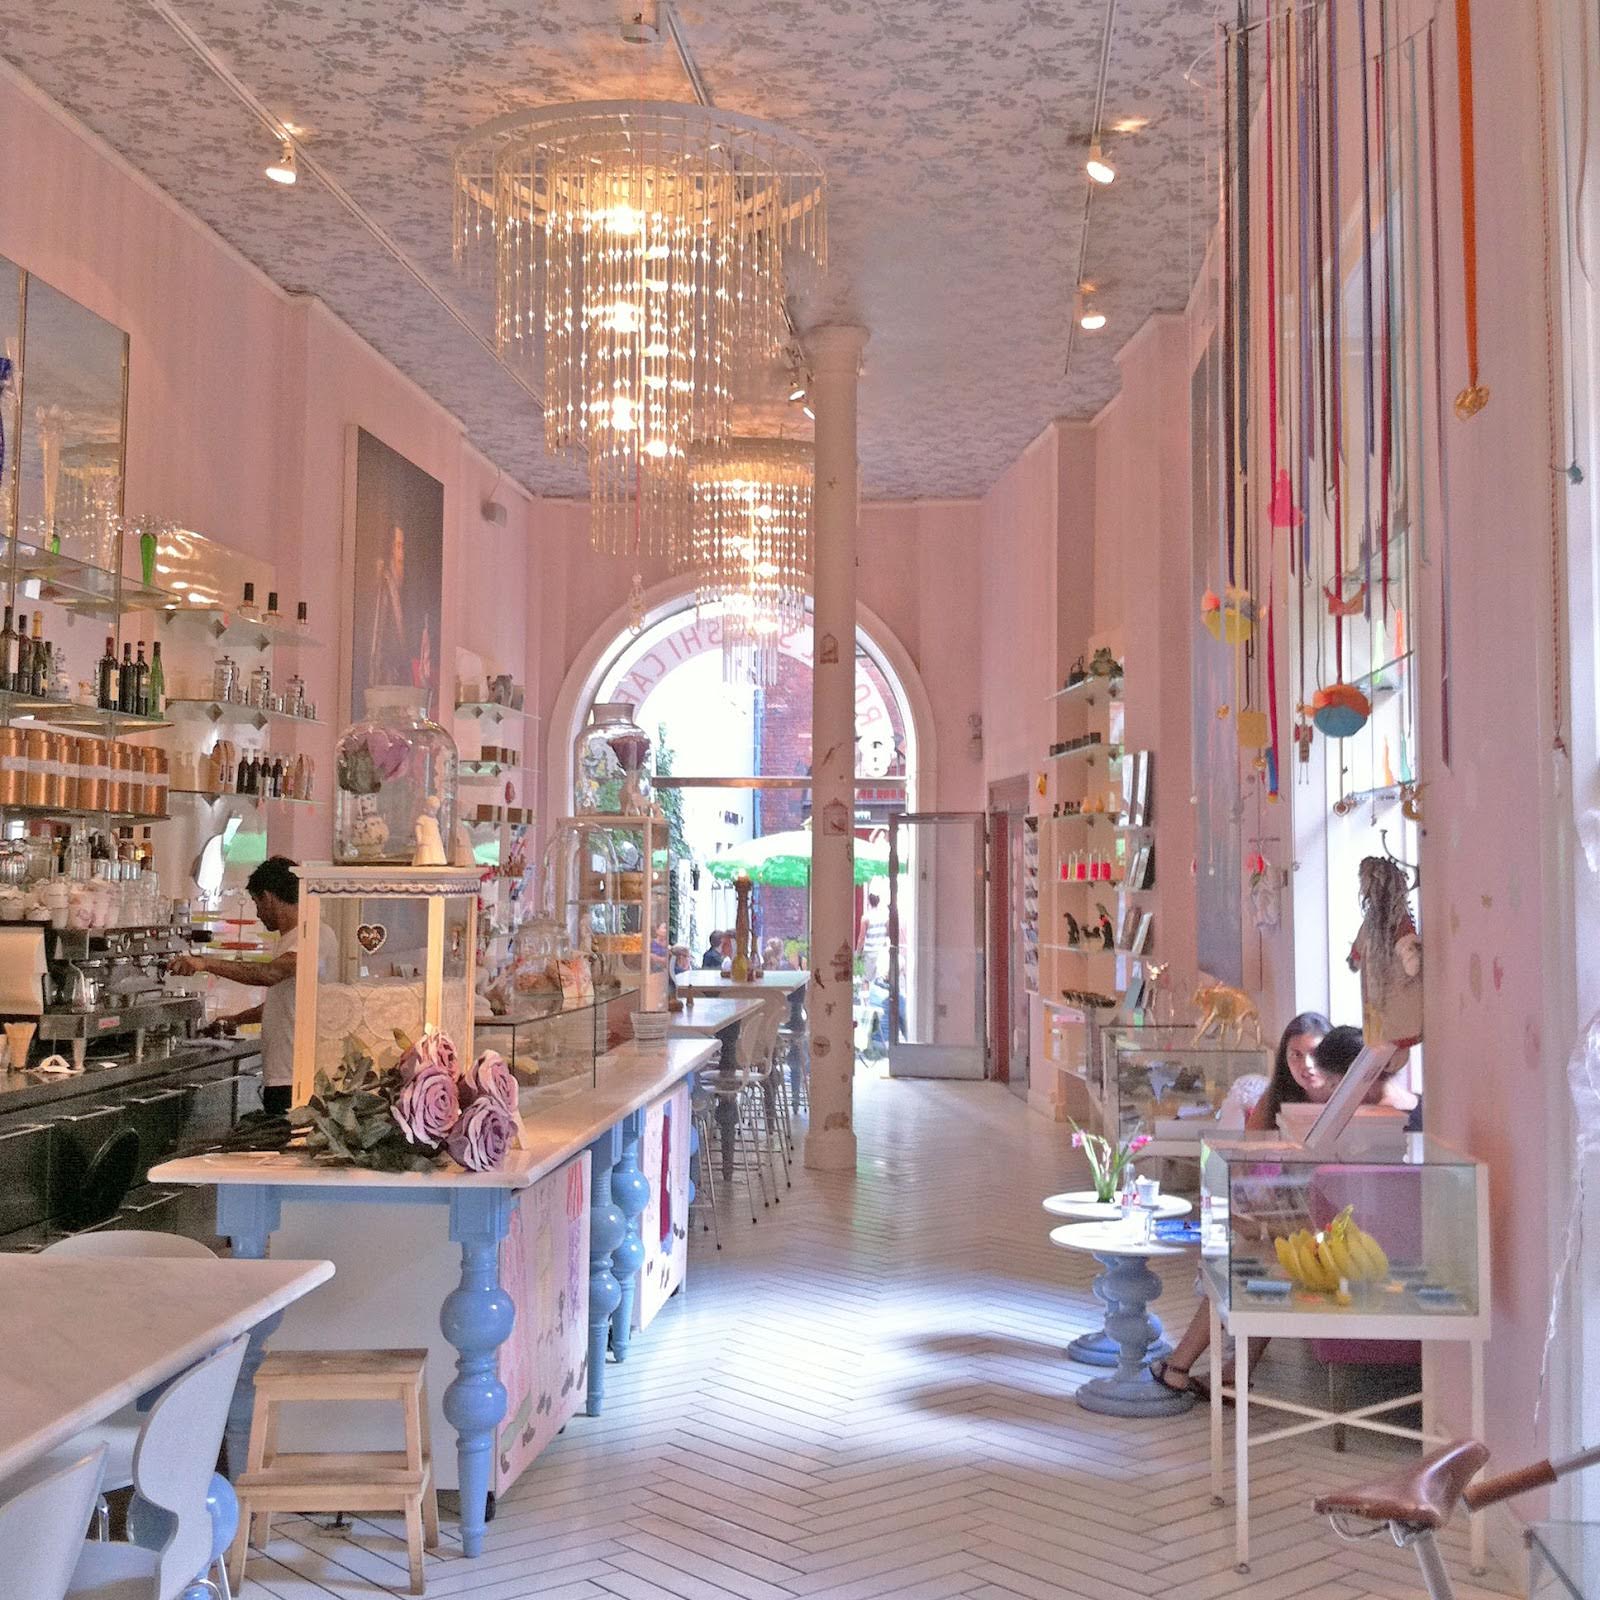 Inside the Smushi cafe (Photo: Royal Smushi Cafe) 